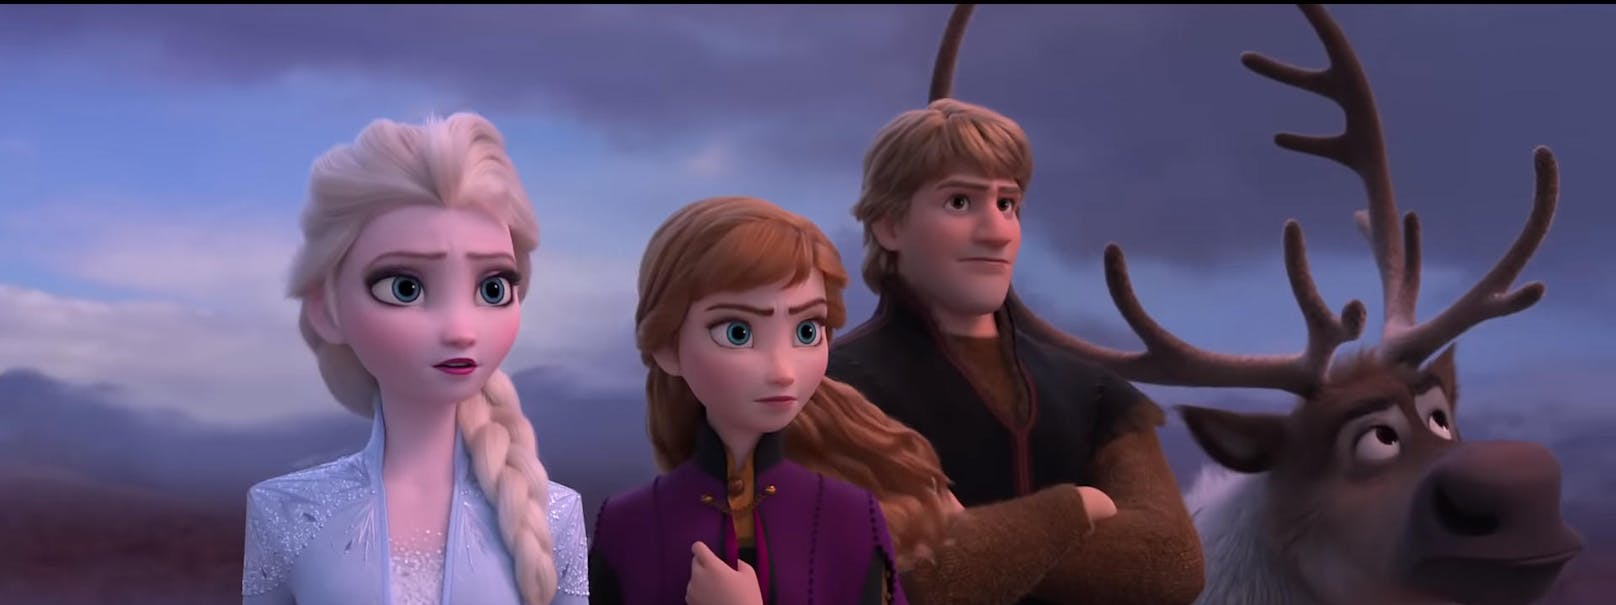 v.l.n.r.: Elsa, Anna, Kristoff und Rentier Sven